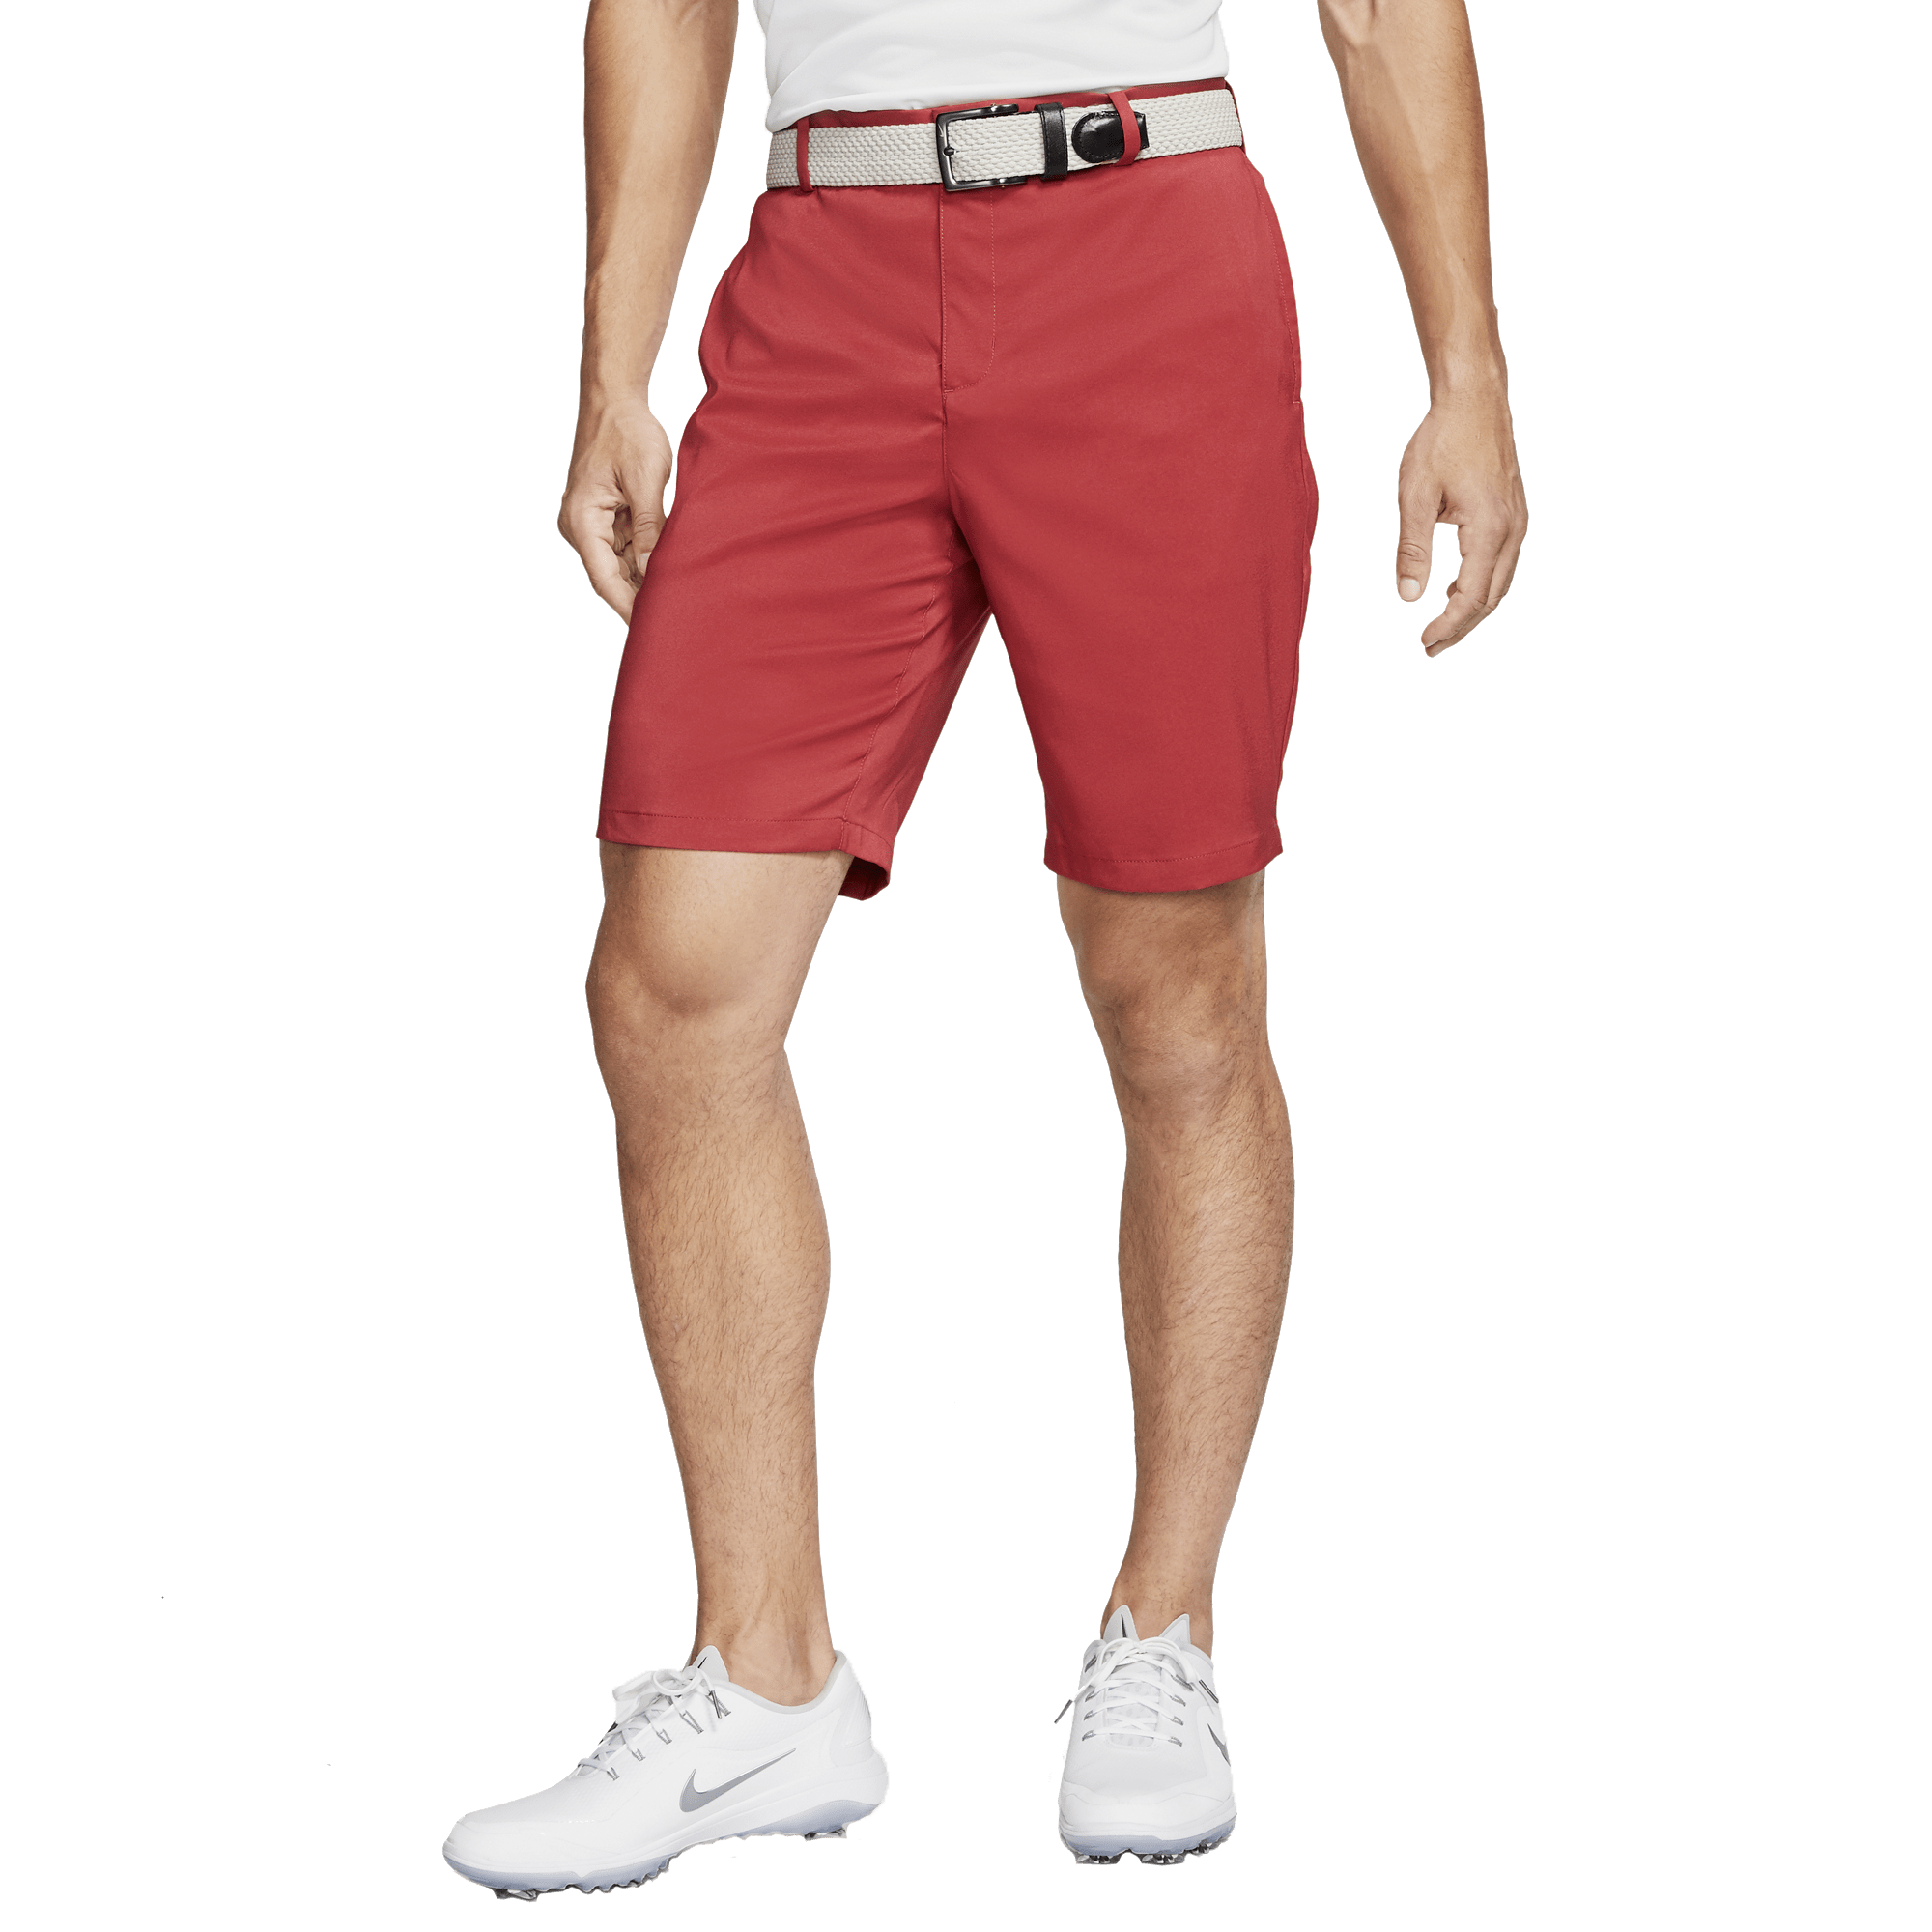 nike golf flex shorts